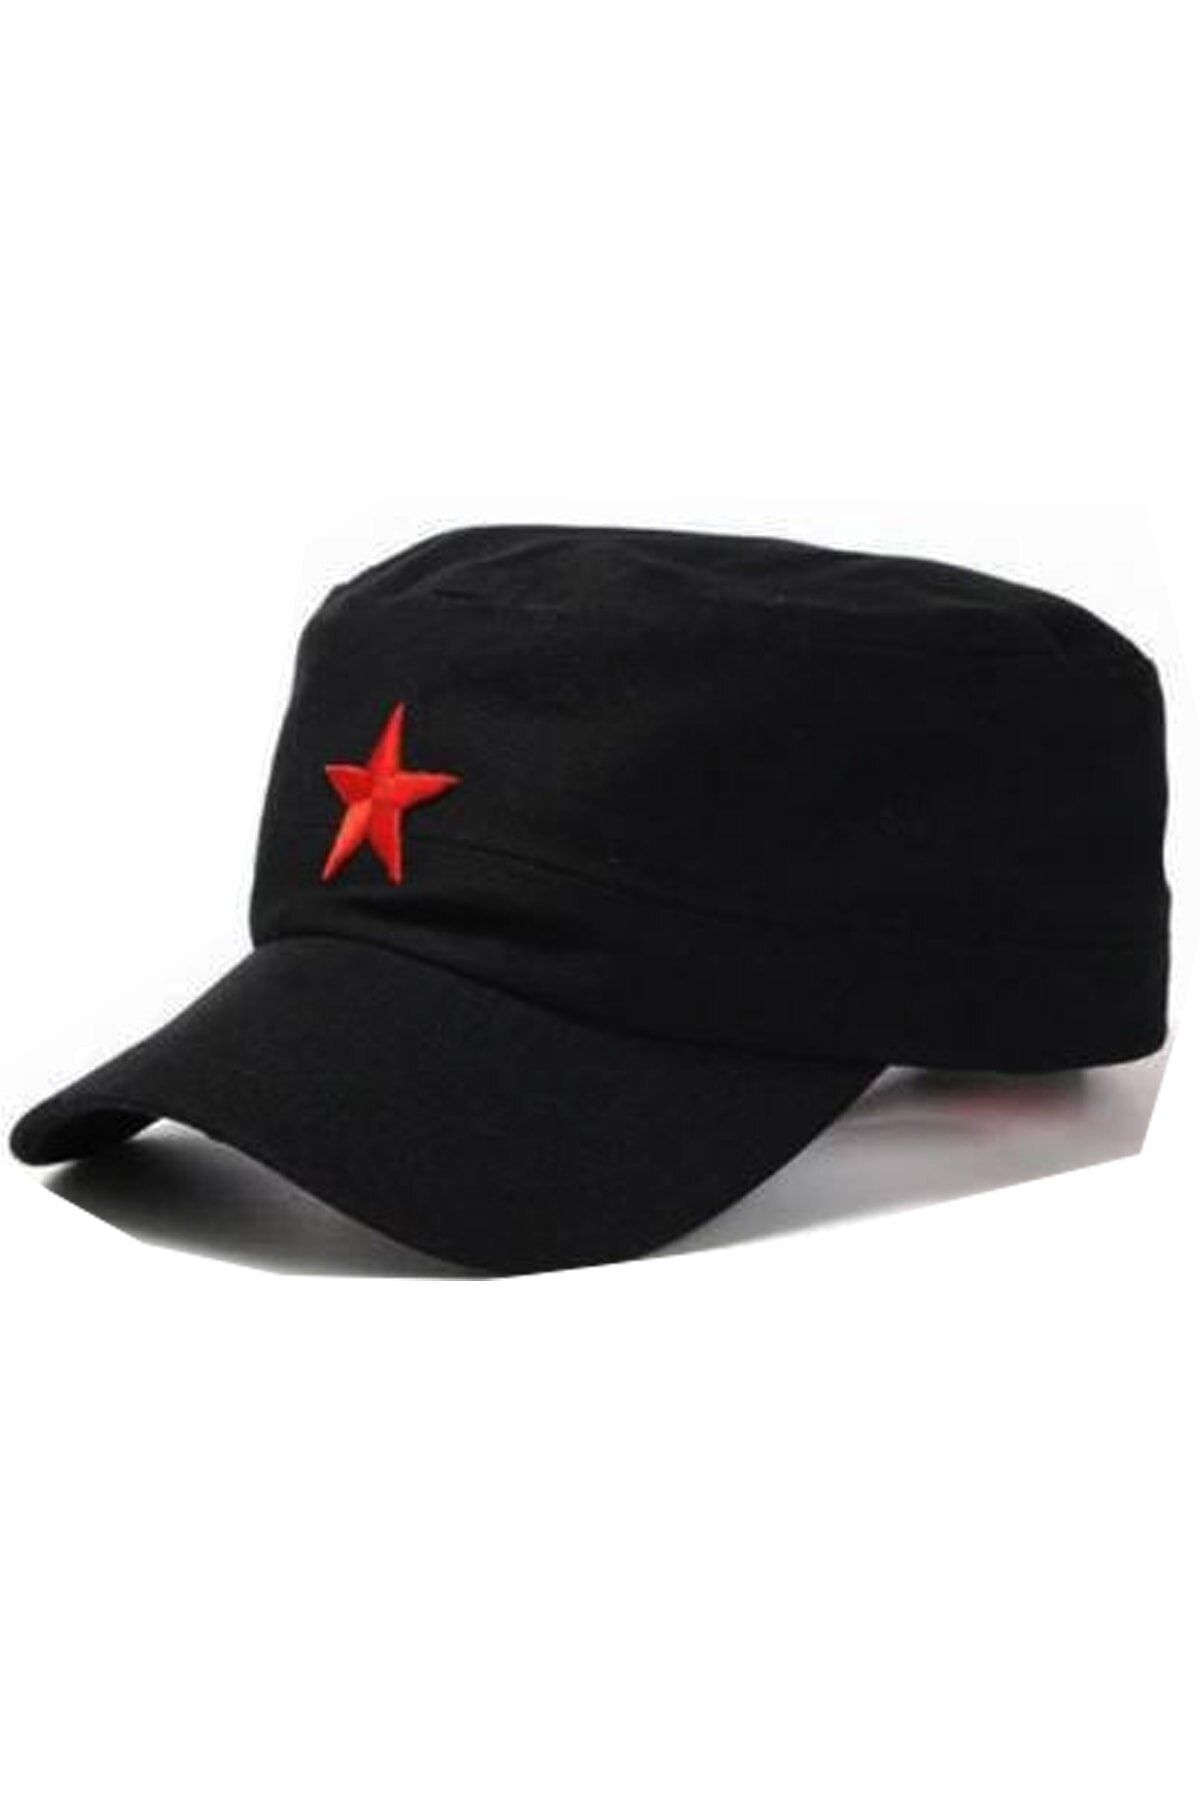 By Şapka Yıldızlı Fidel Castro Che Guevara Şapkası Siyah Renk